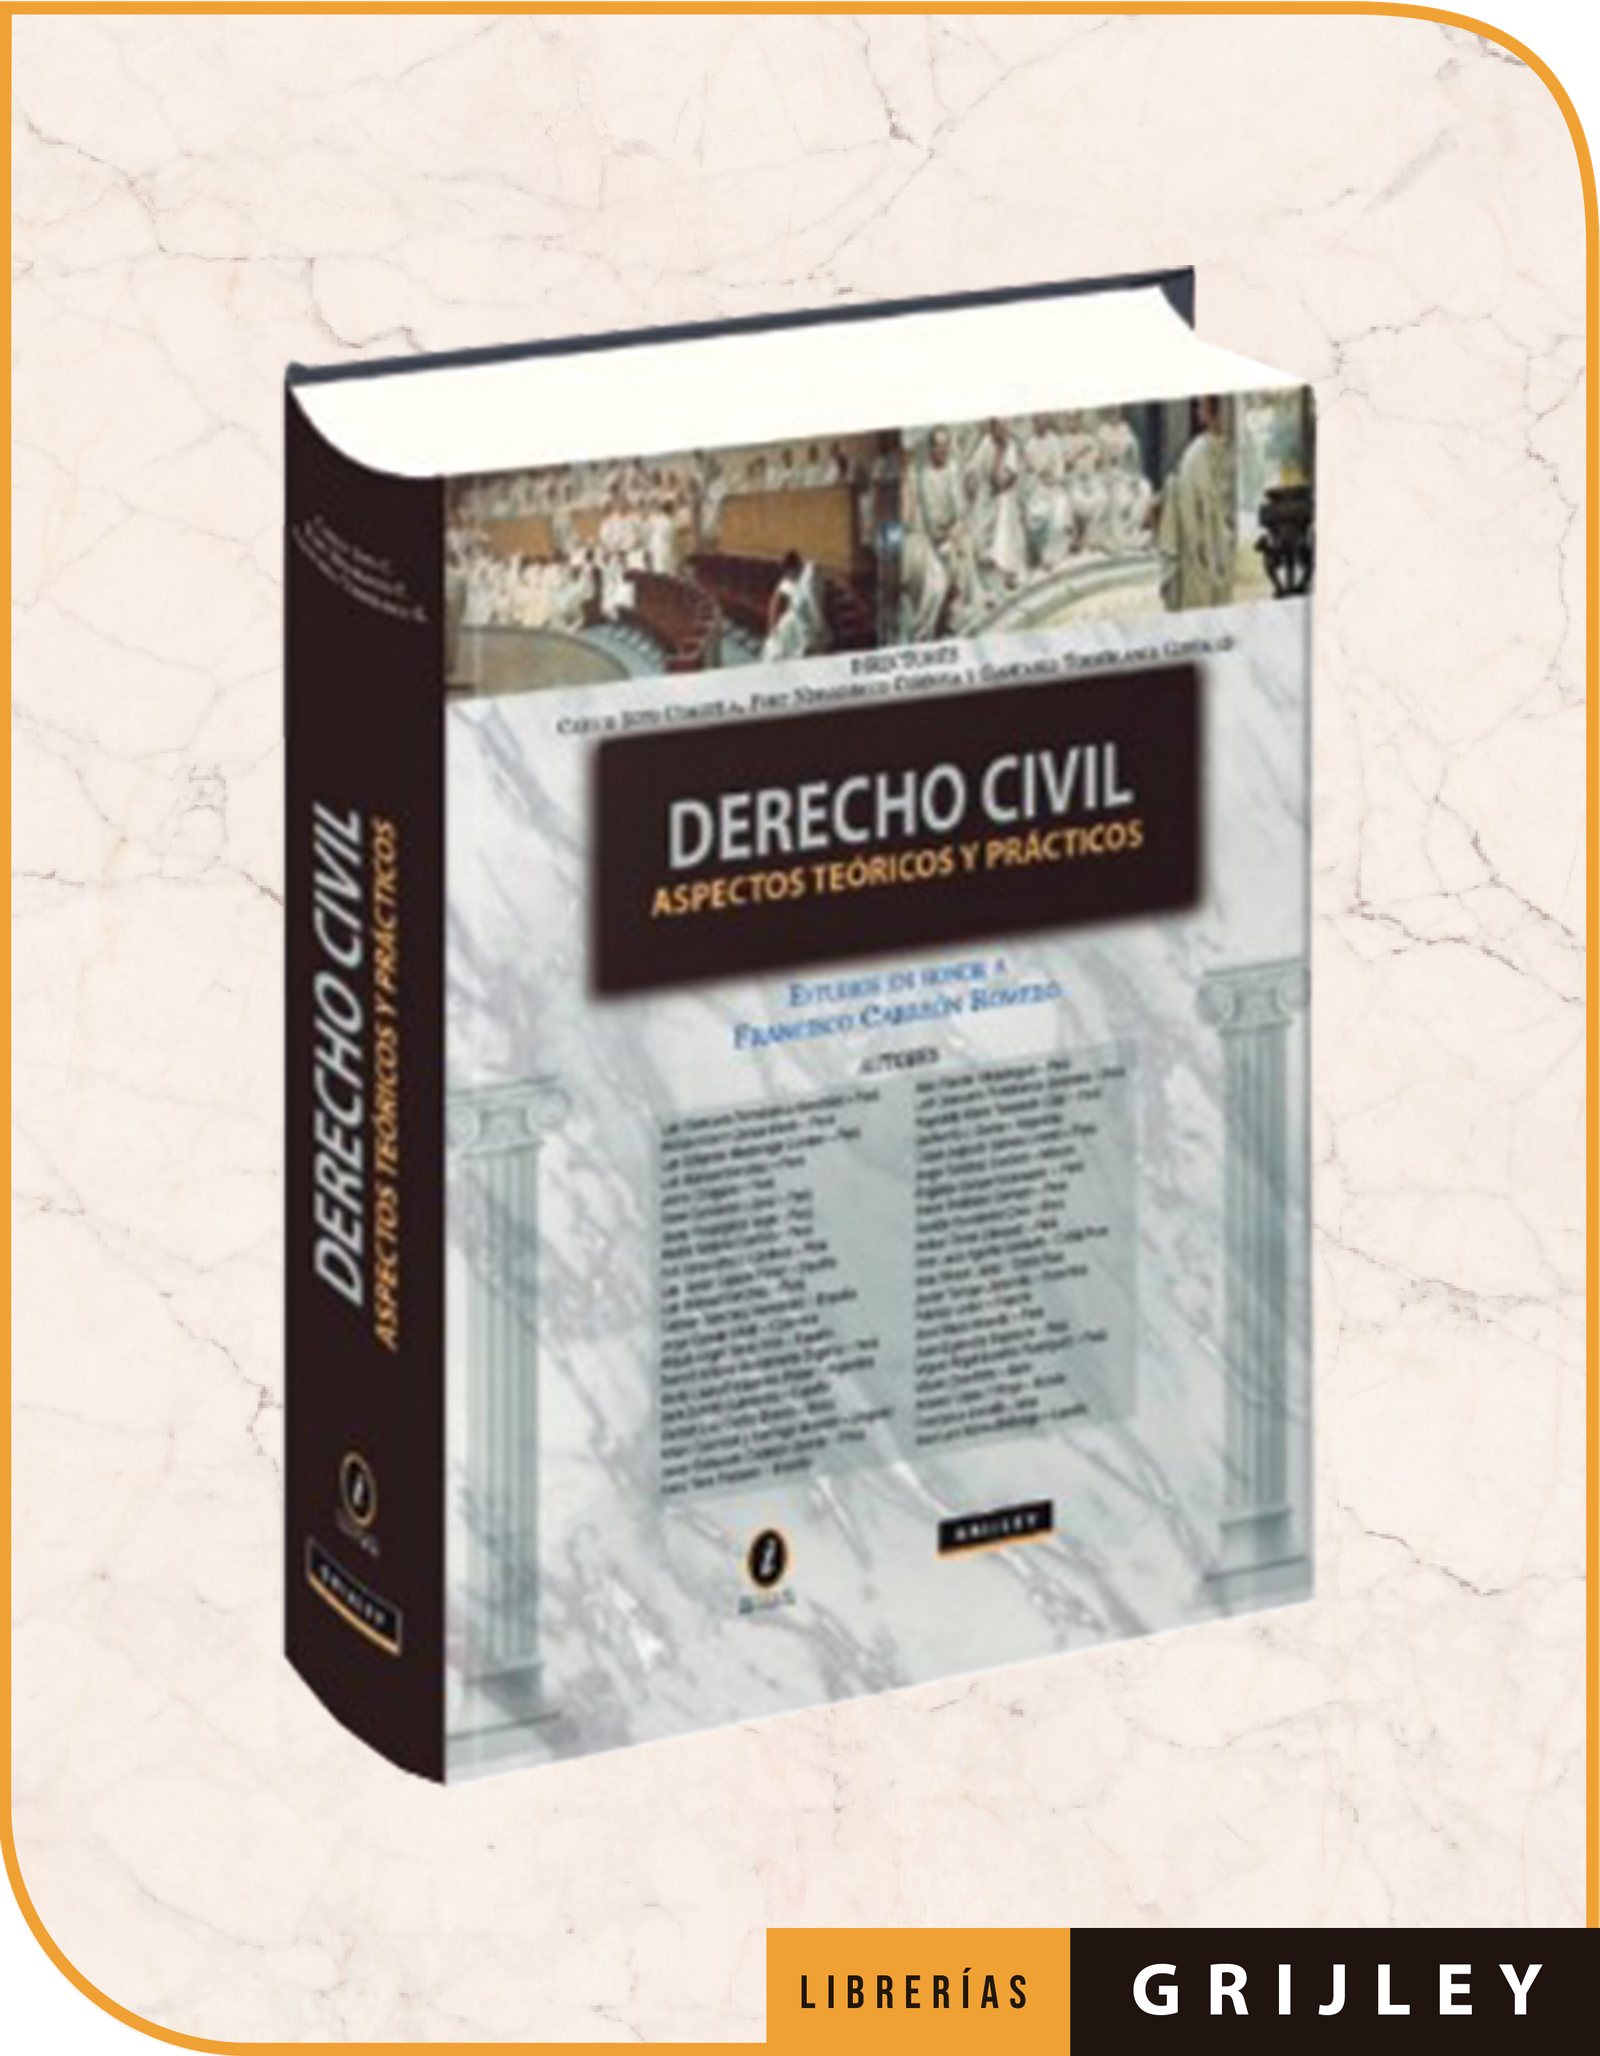 DERECHO CIVIL. Aspectos teóricos y prácticos. Estudios en honor a Francisco Carreón Romero